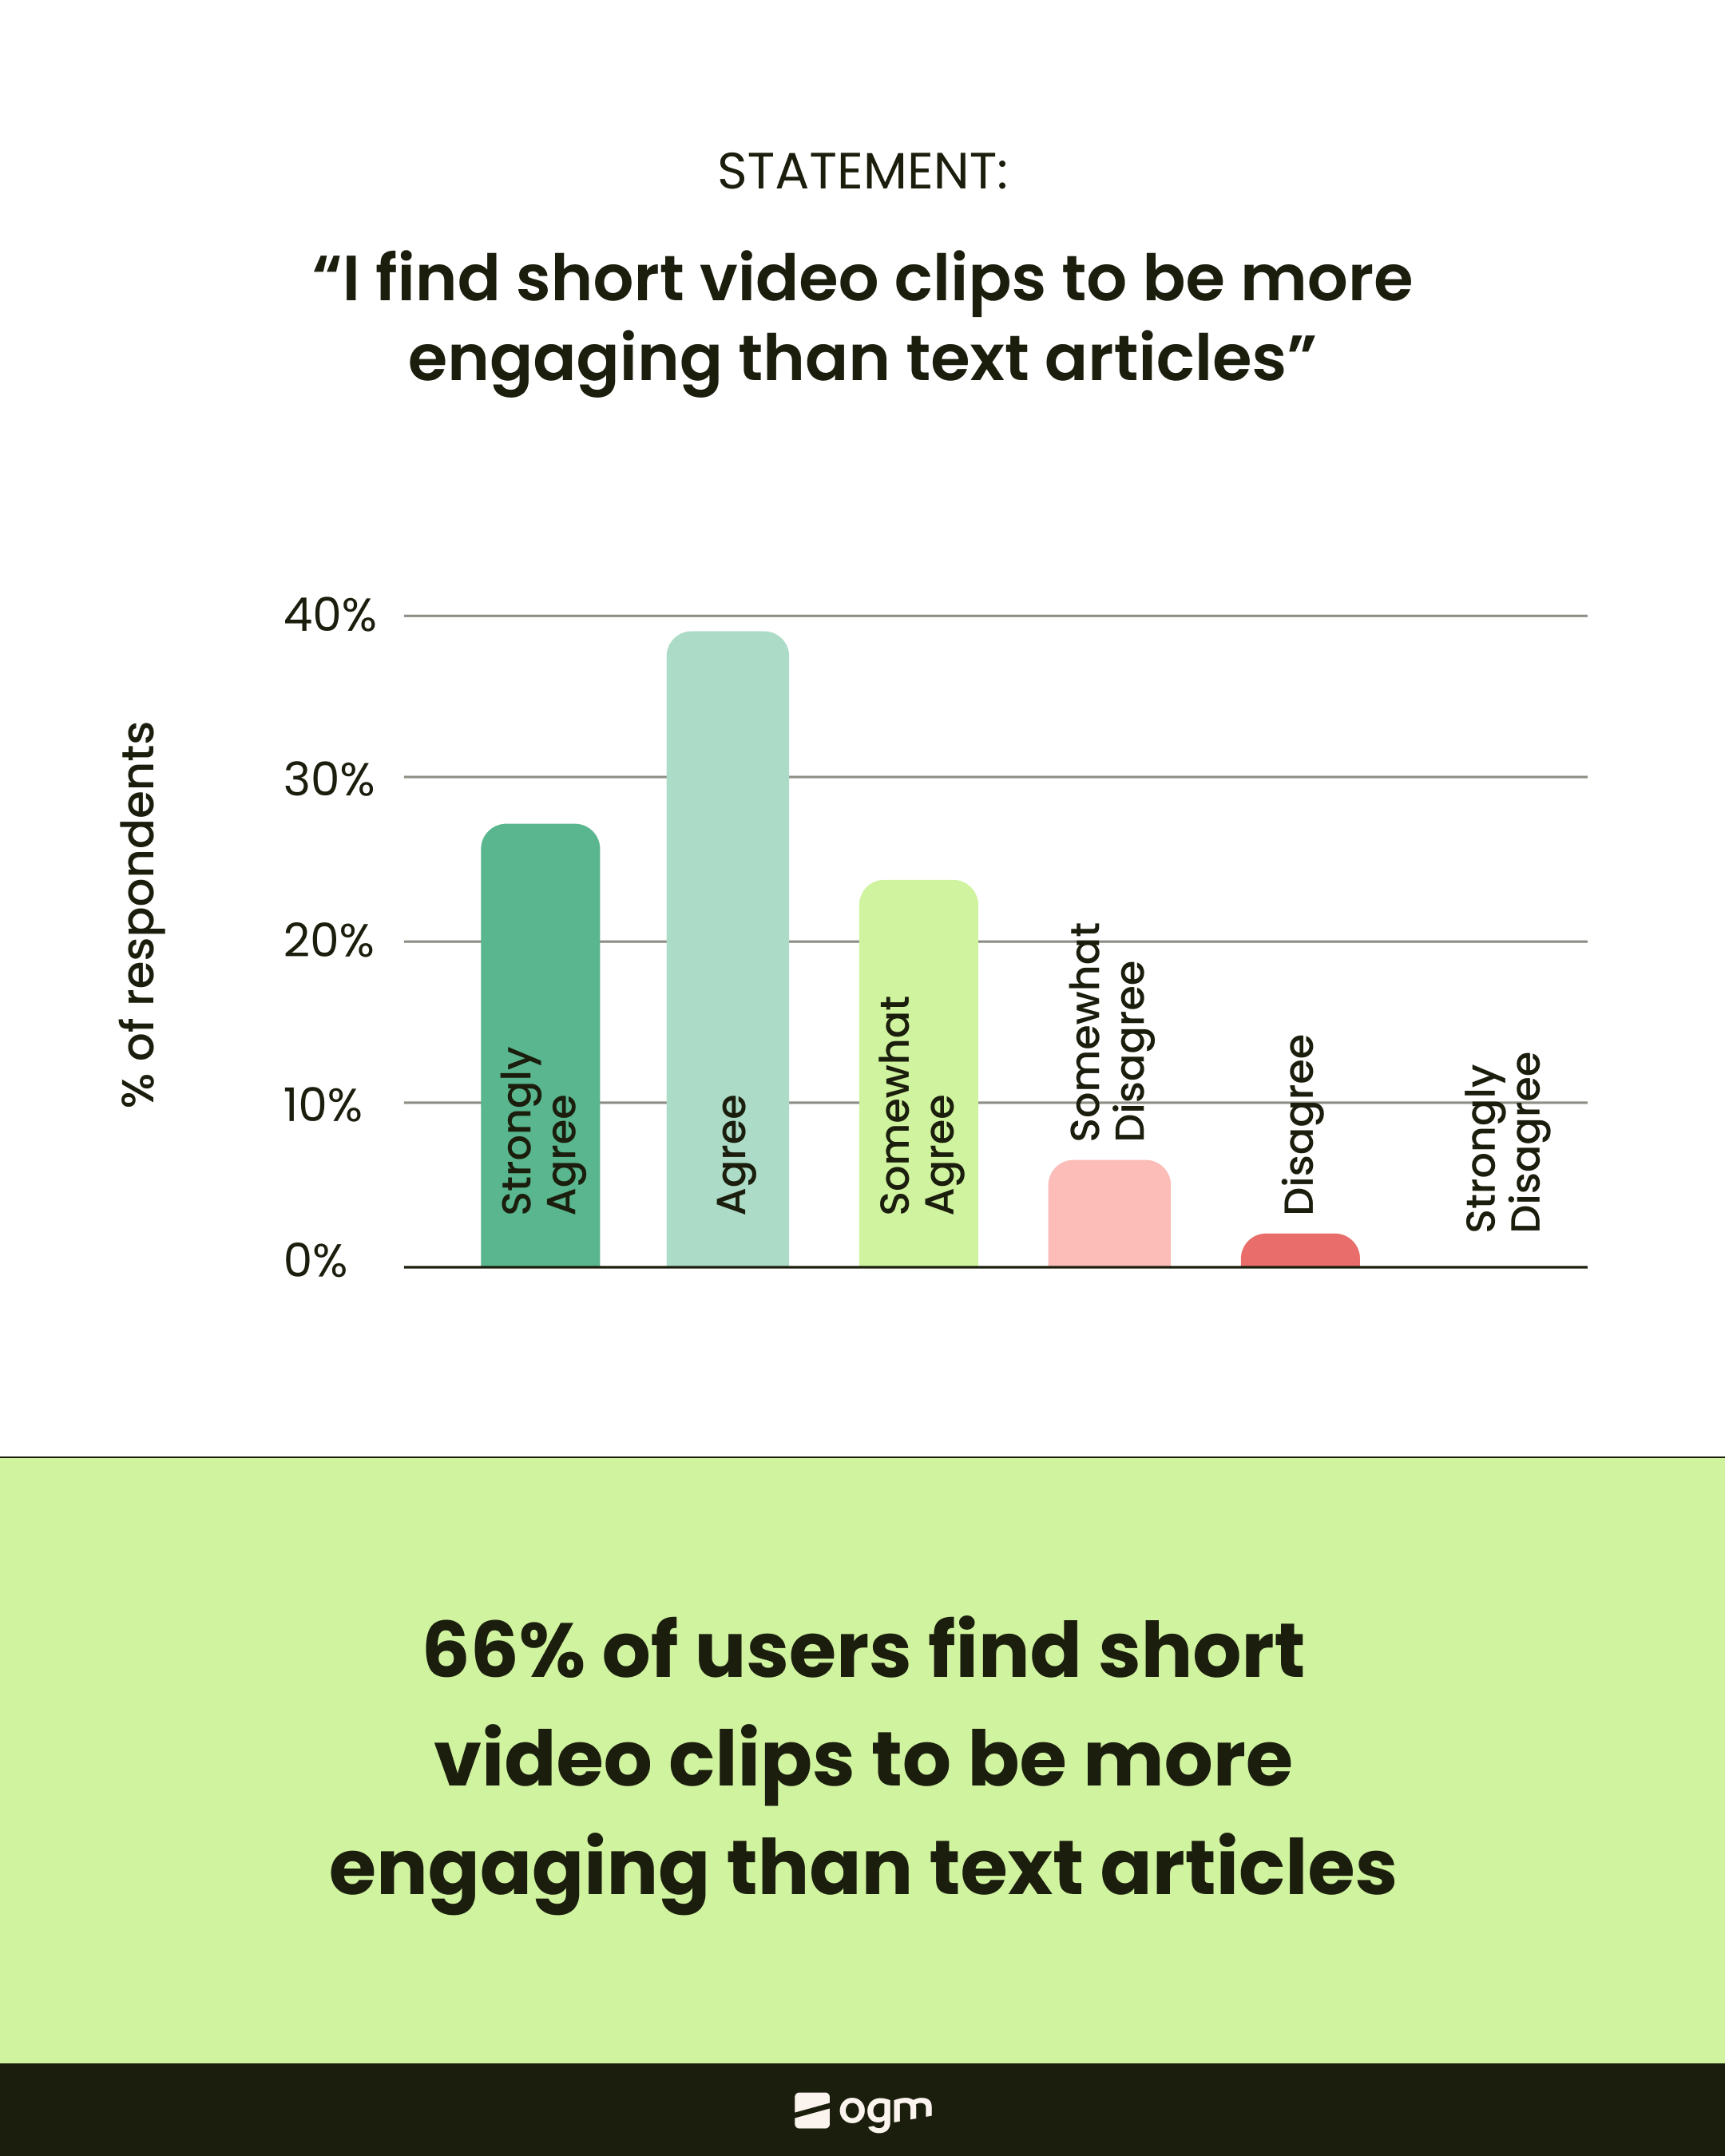 Les utilisateurs sont plus engagés par les vidéos courtes que par le texte